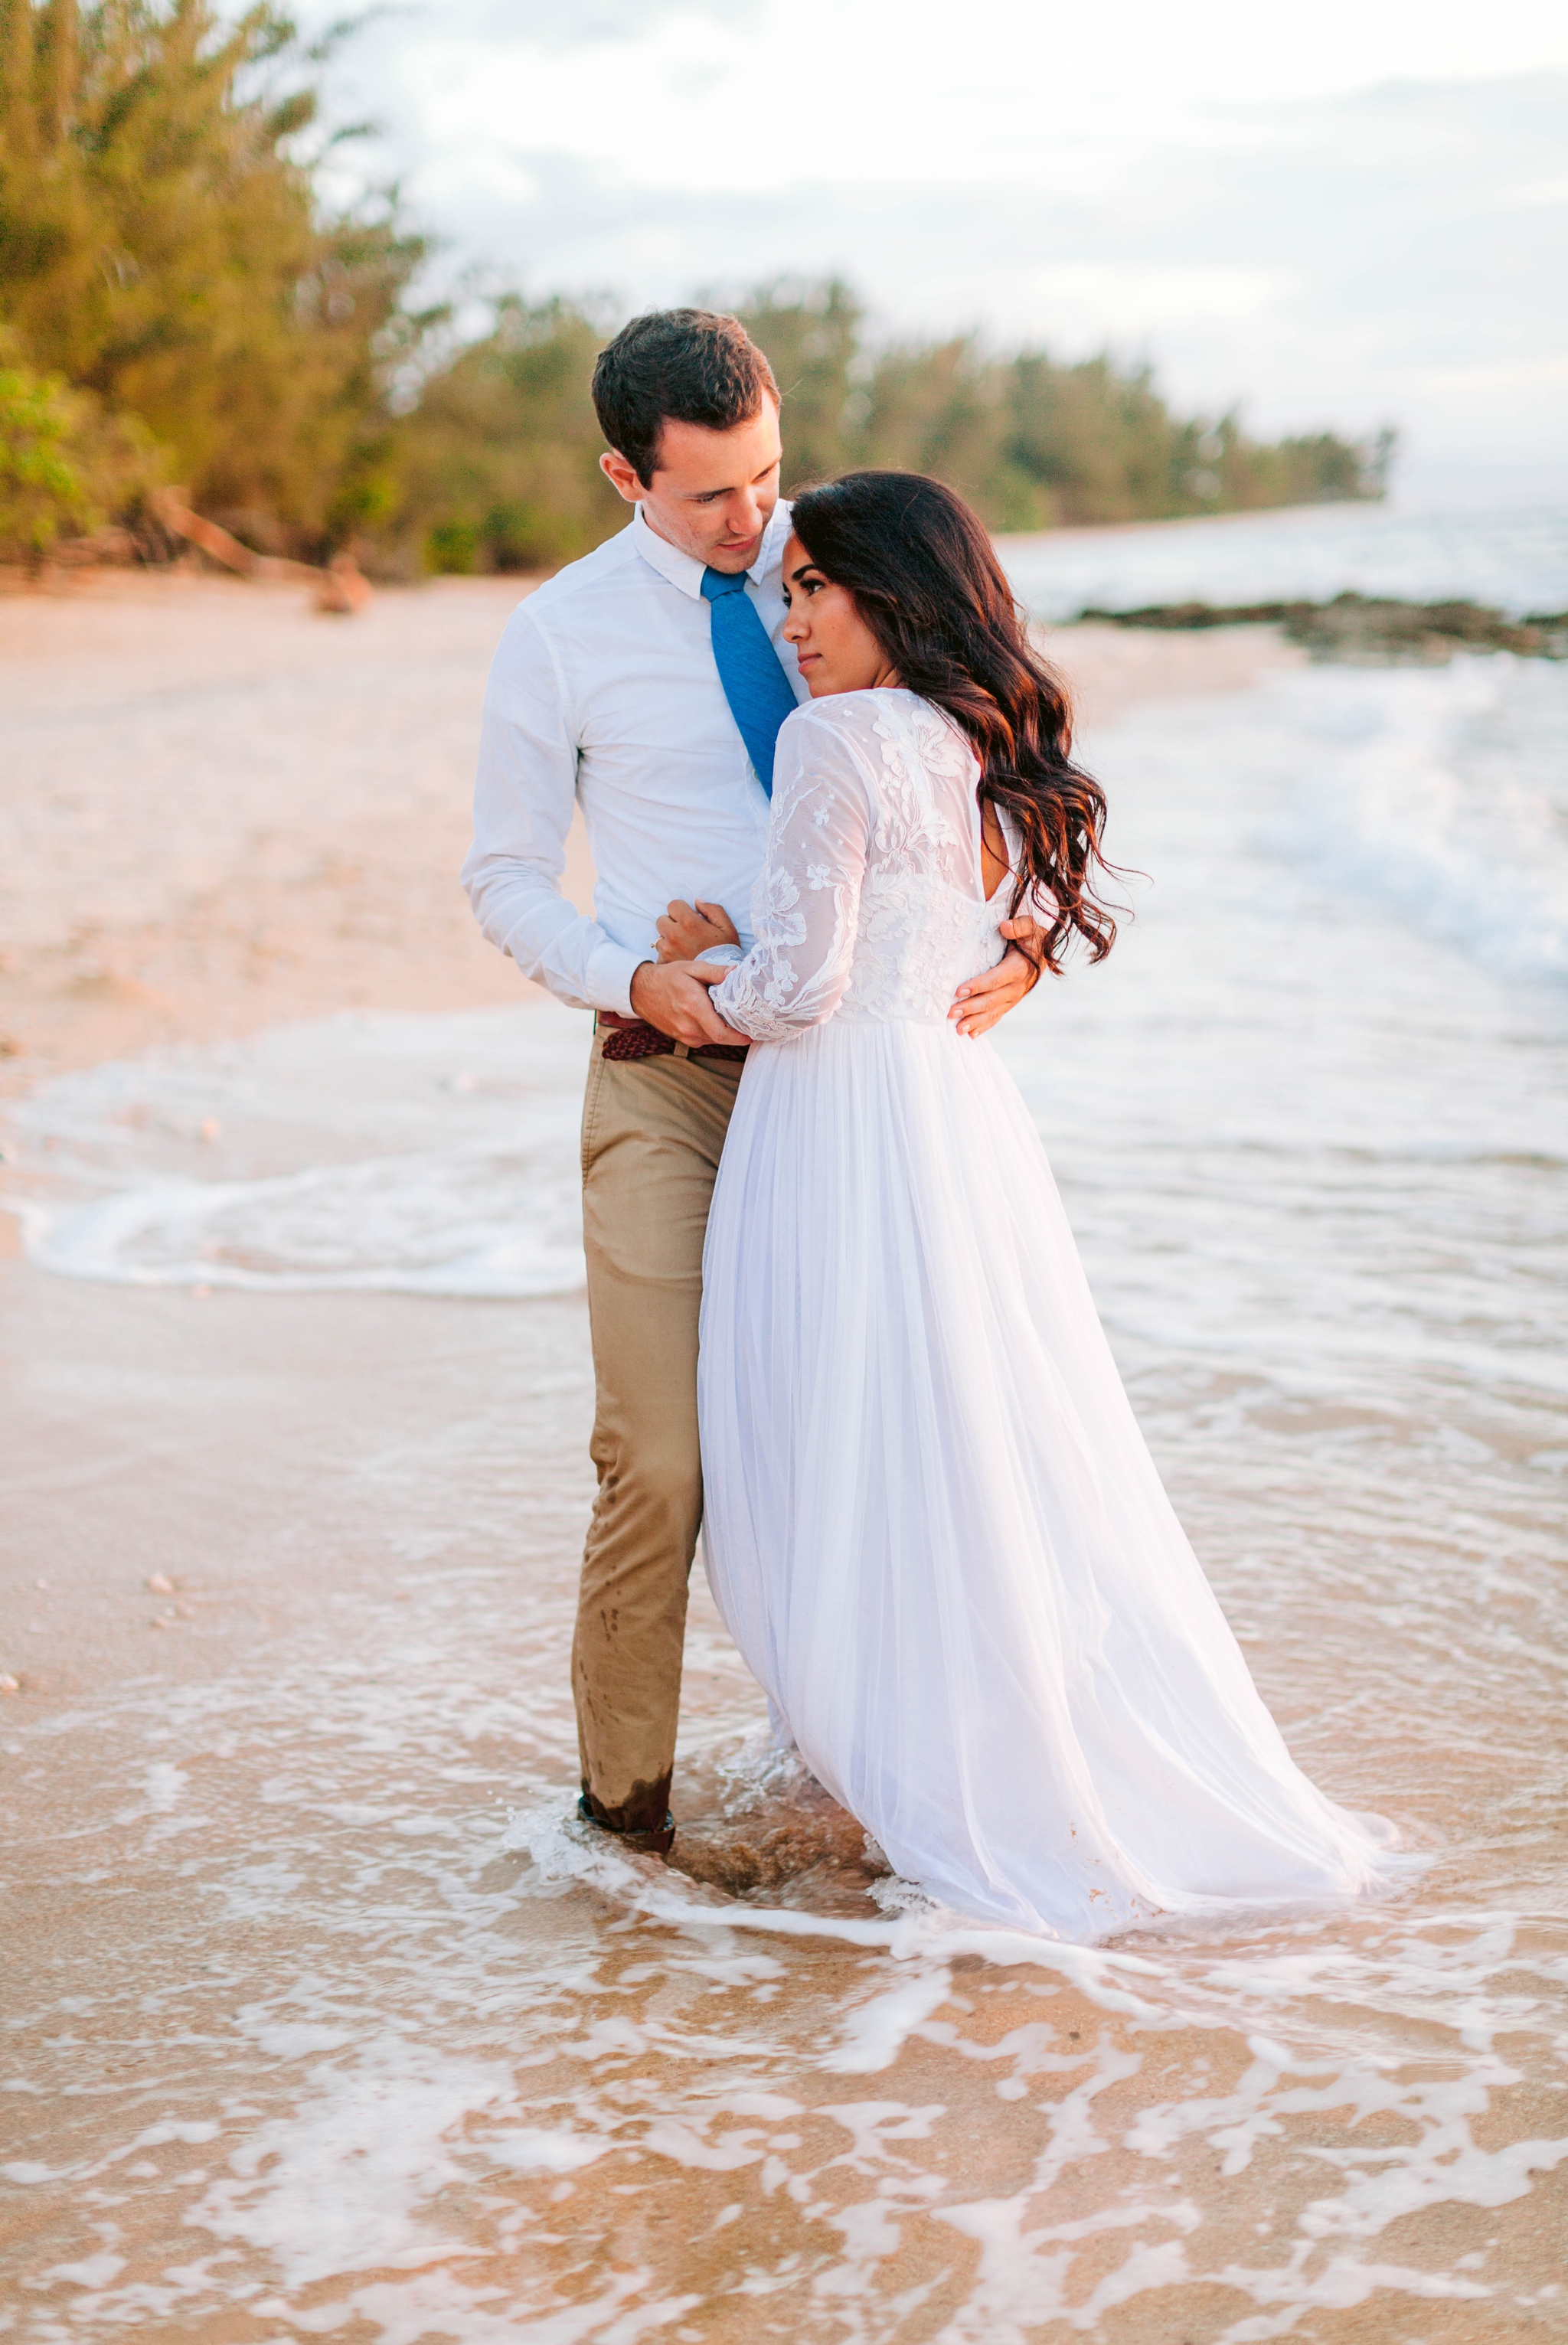  Bride and Groom - Wedding Portraits at Sunset in Hawaii - Ana + Elijah - Wedding at Loulu Palm in Haleiwa, HI - Oahu Hawaii Wedding Photographer - #hawaiiweddingphotographer #oahuweddings #hawaiiweddings 